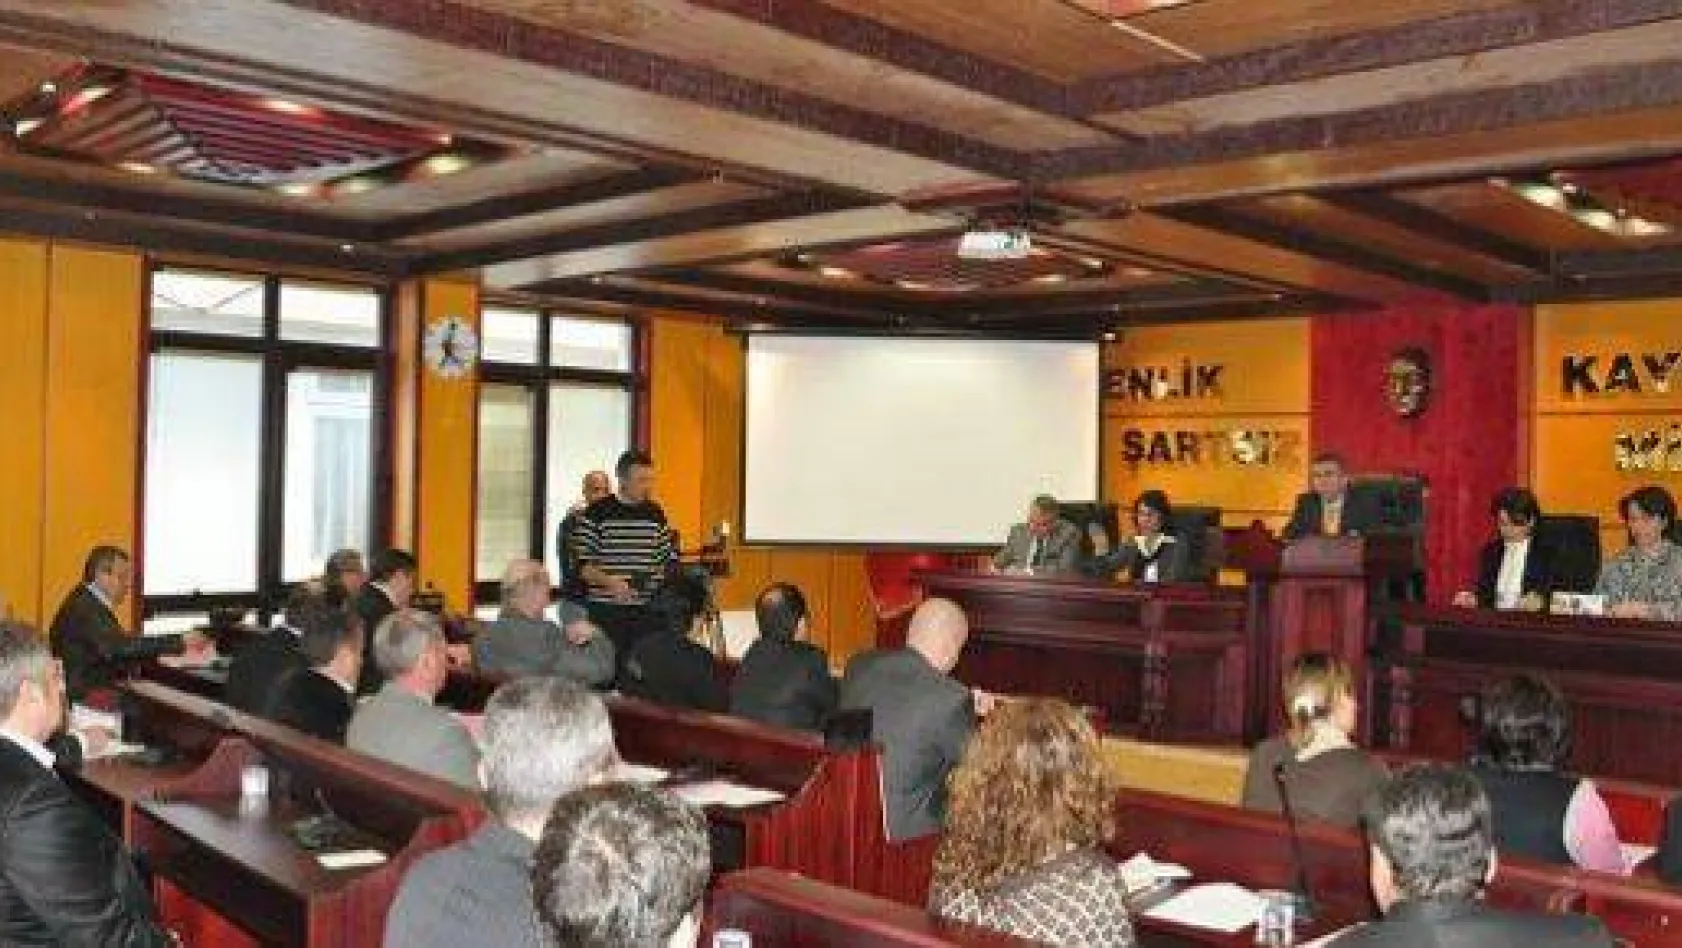 Çatalca Aralık Meclisi Yeni Salonda gerçekleşti